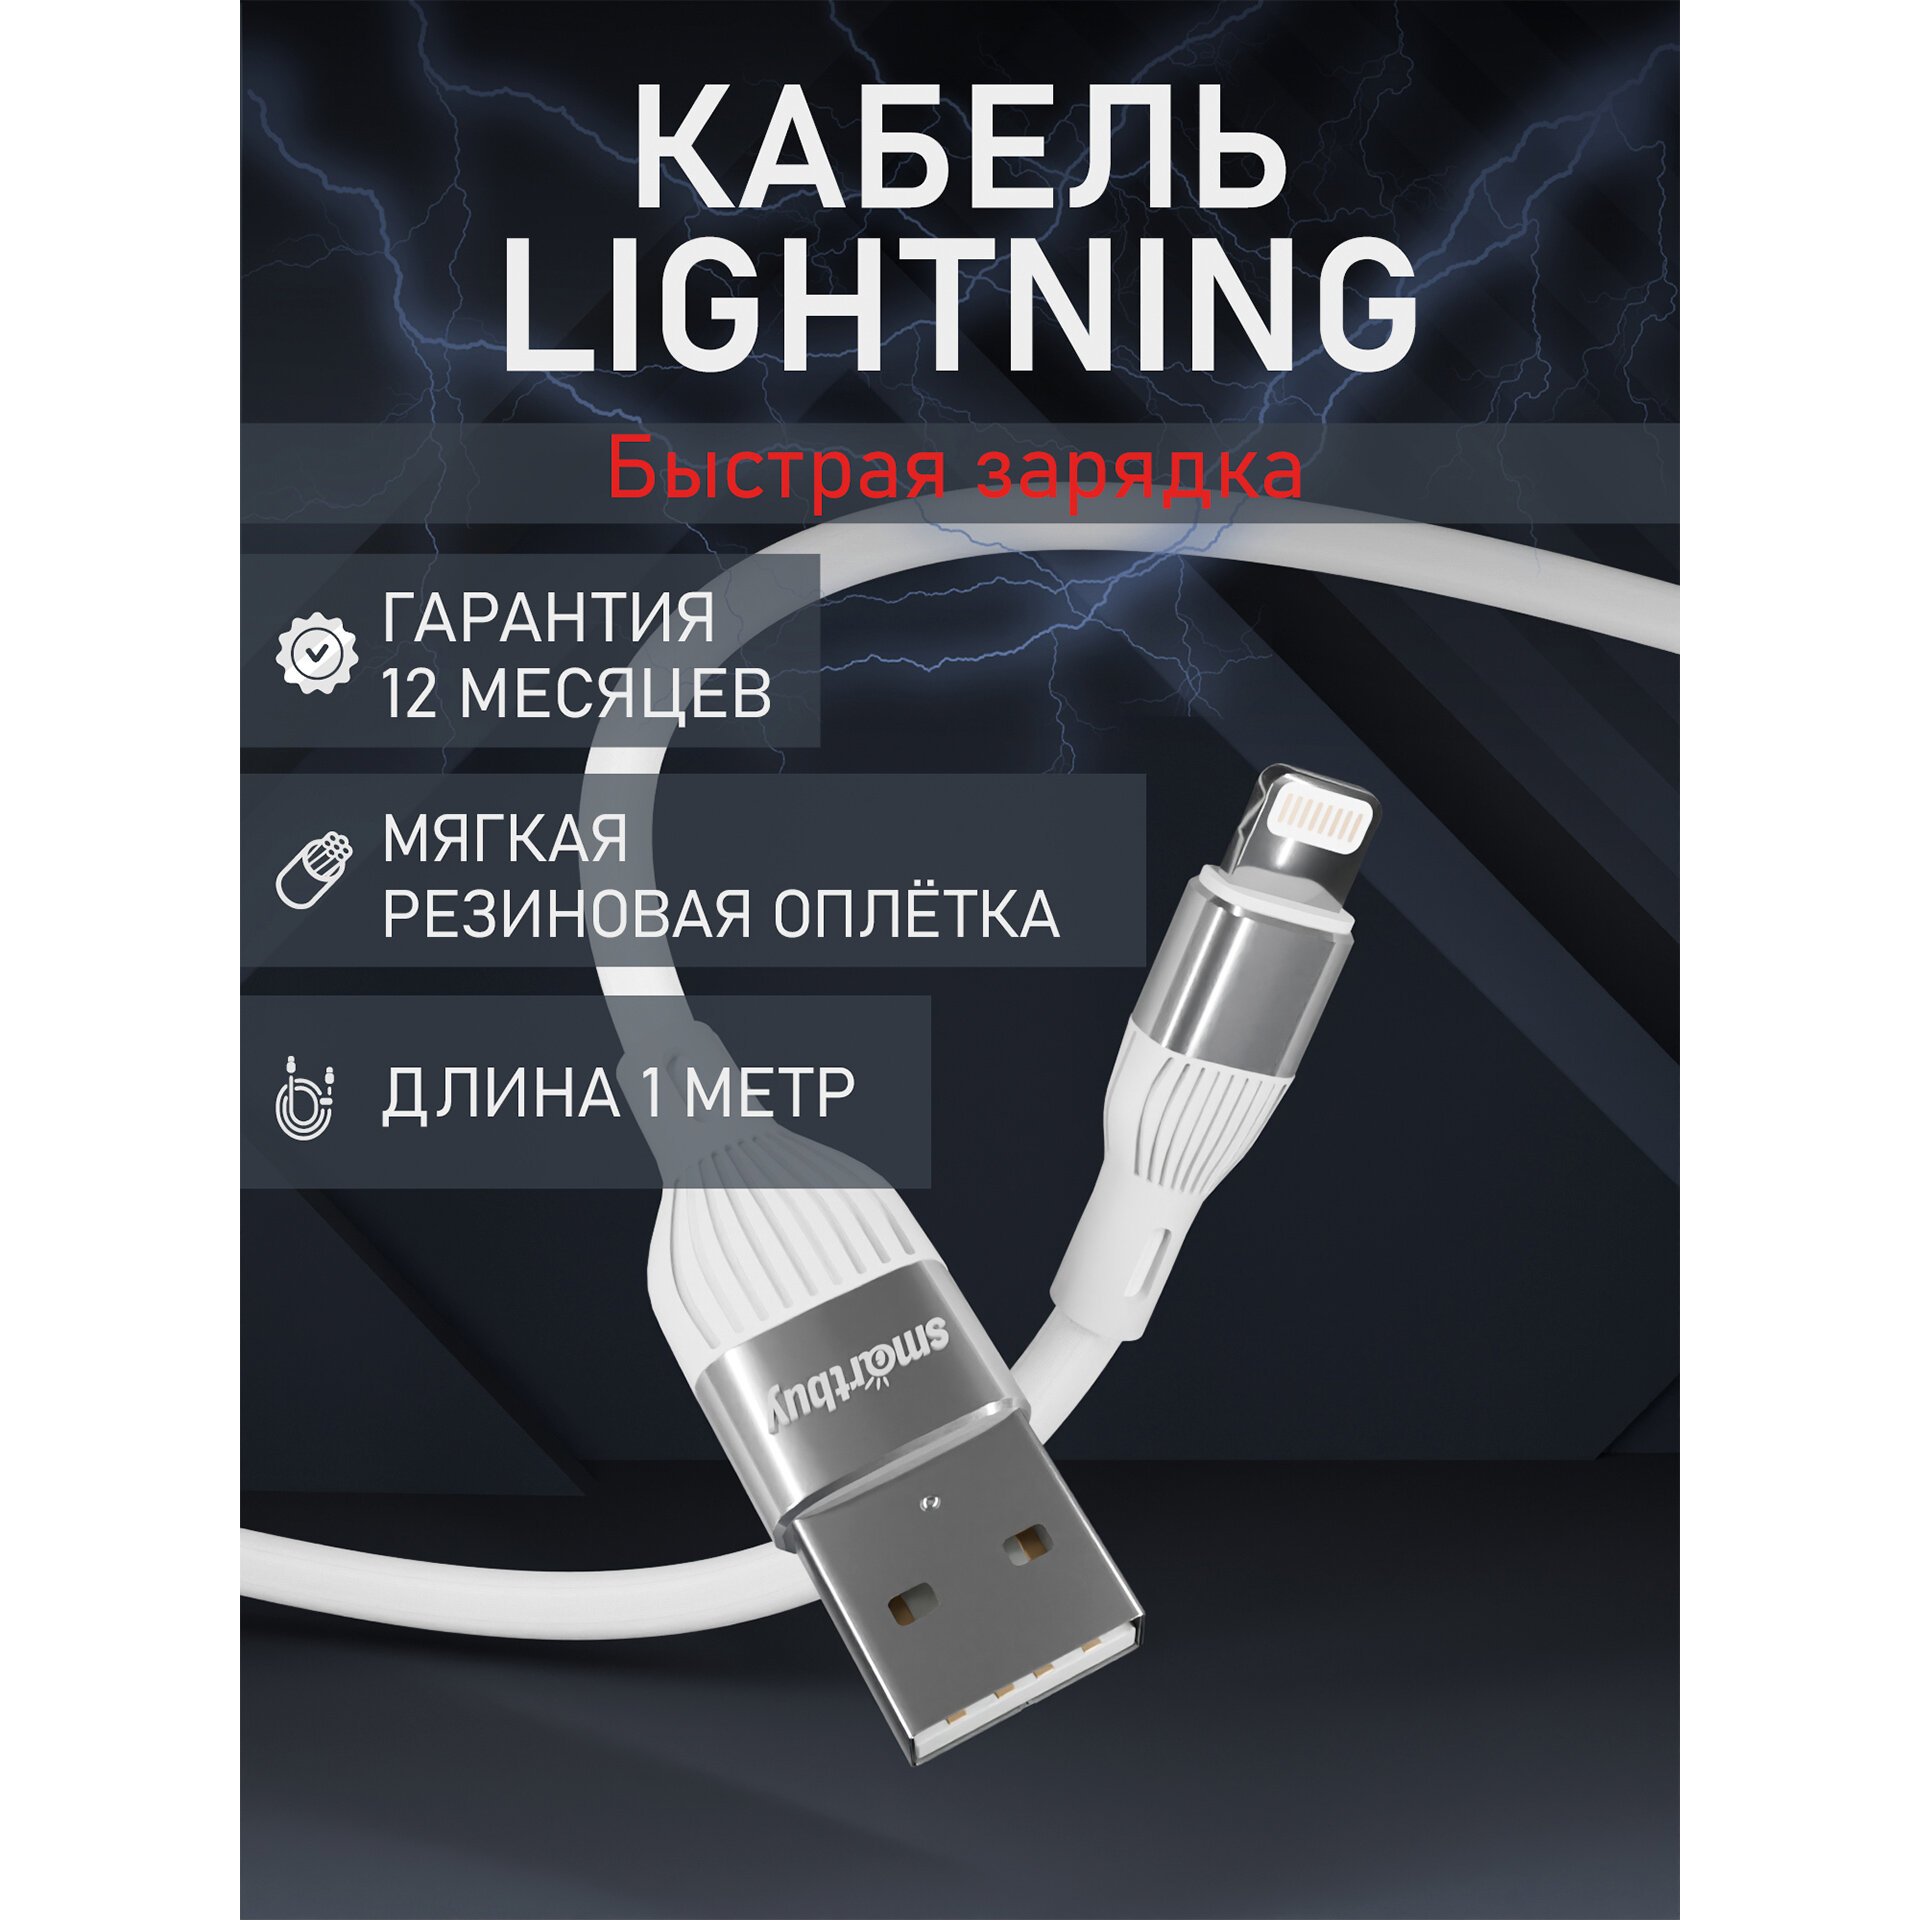 Кабель для зарядки и передачи данных S72 Lightning белый 2.4 А сил 1м Smartbuy (iK-512-S72w)